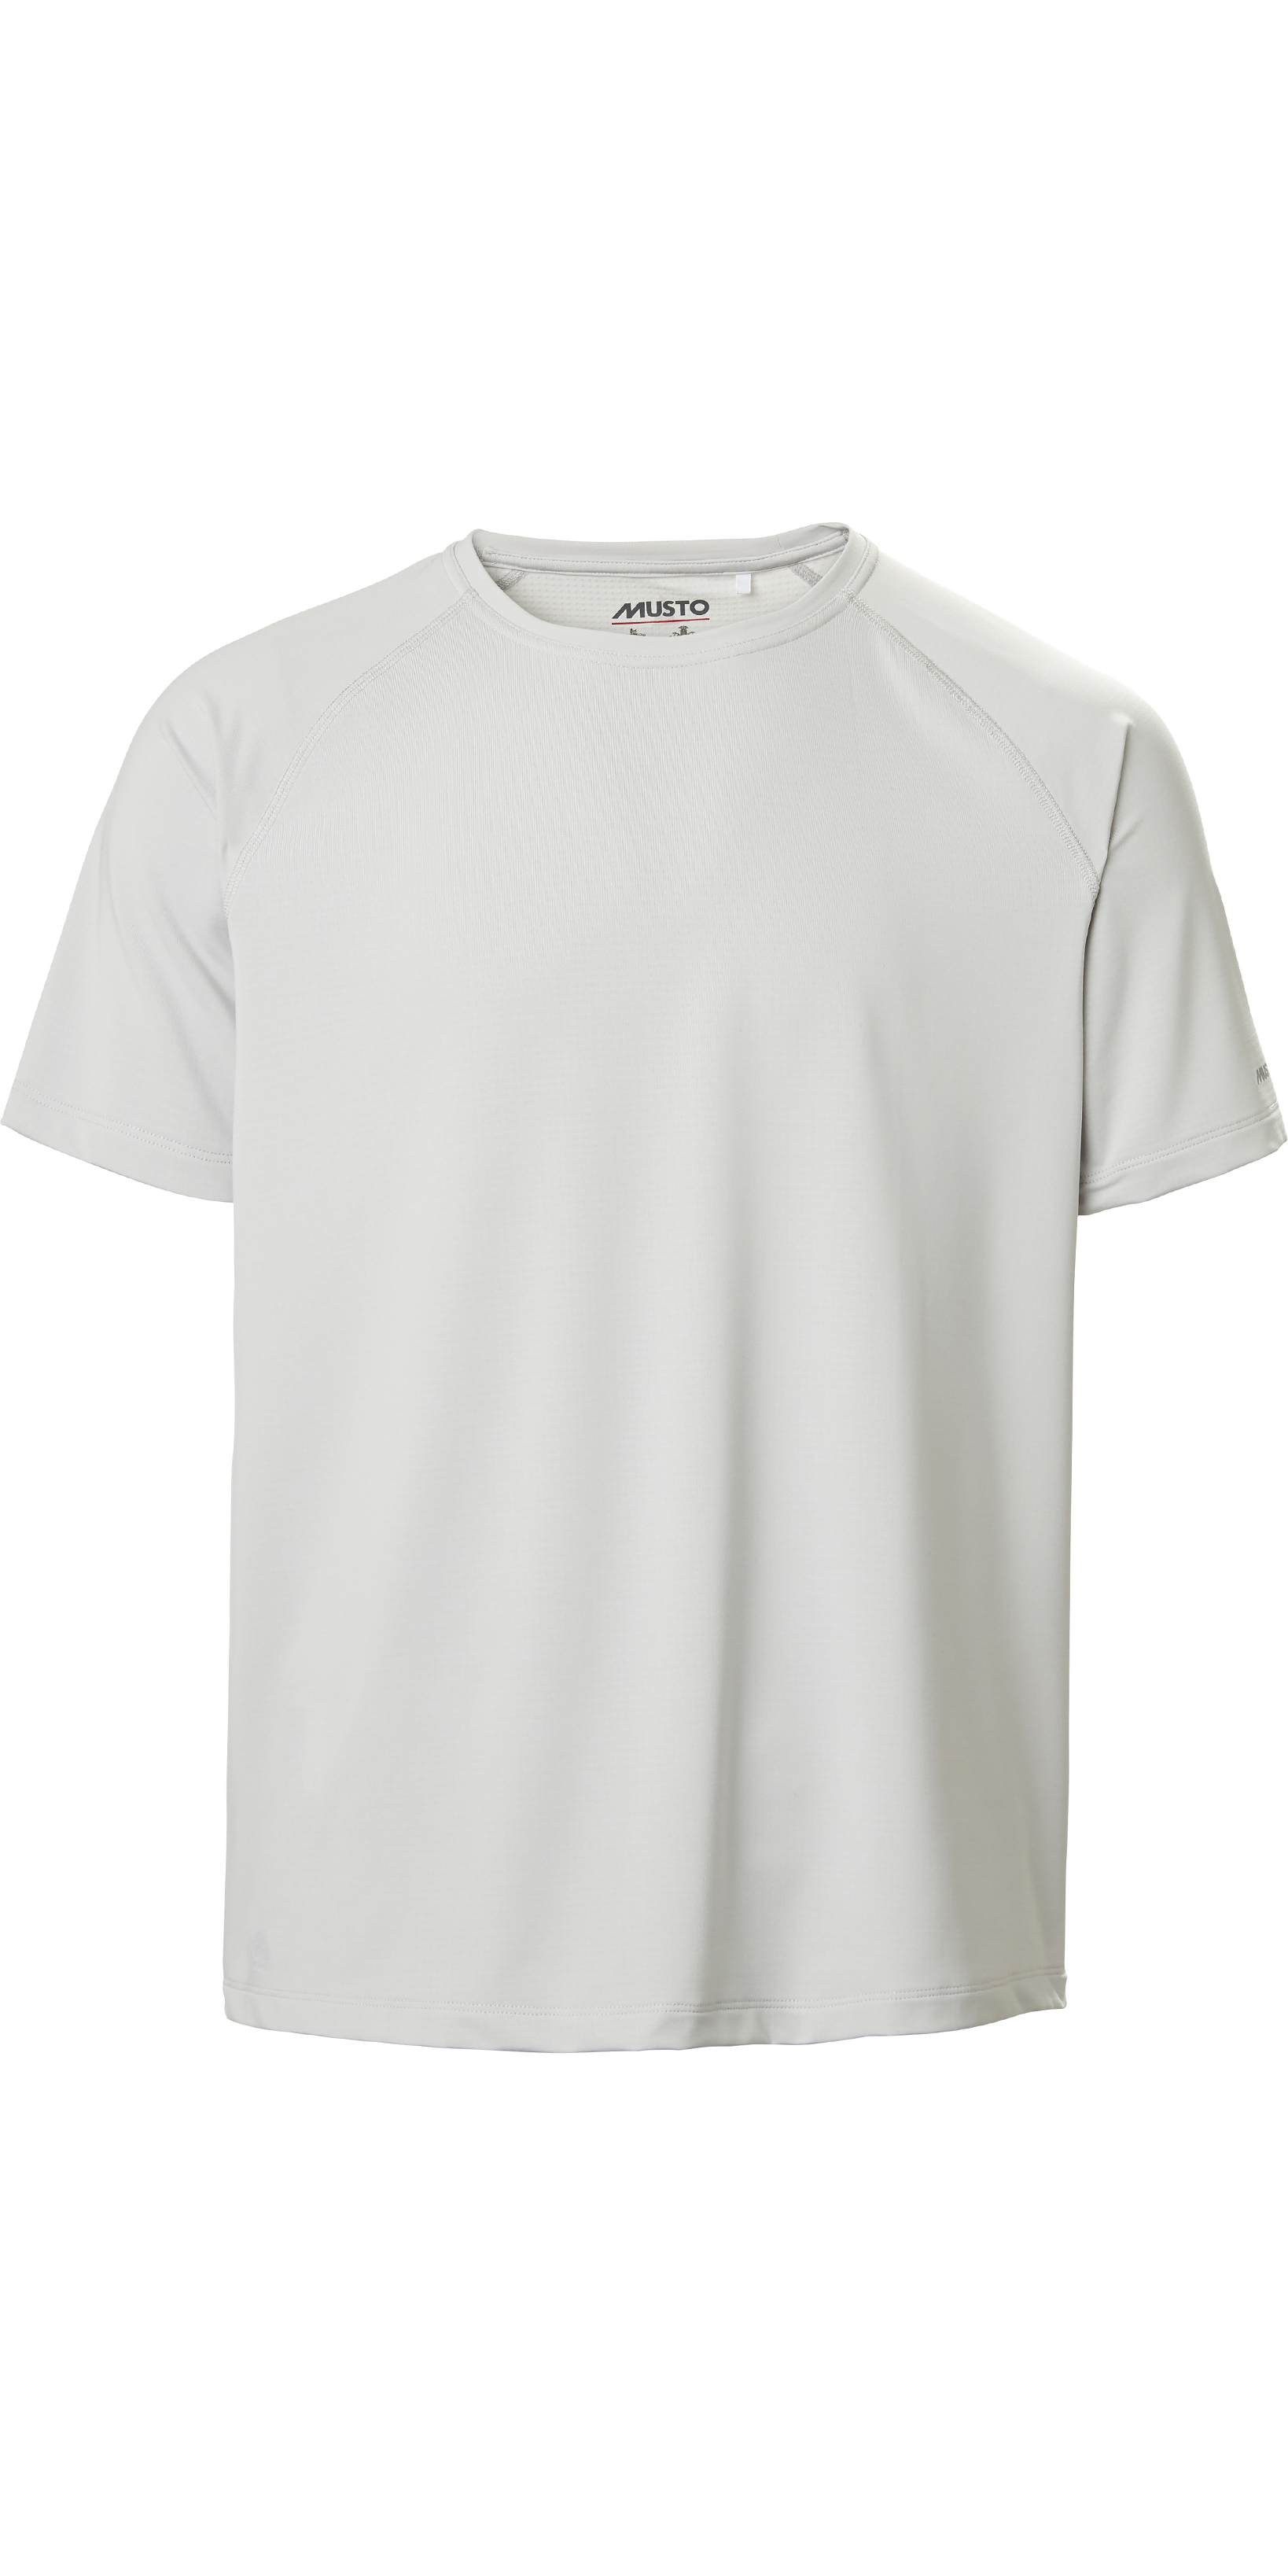 Musto Men's Evolution Sunblock Short-Sleeve T-Shirt 2.0 White XXL